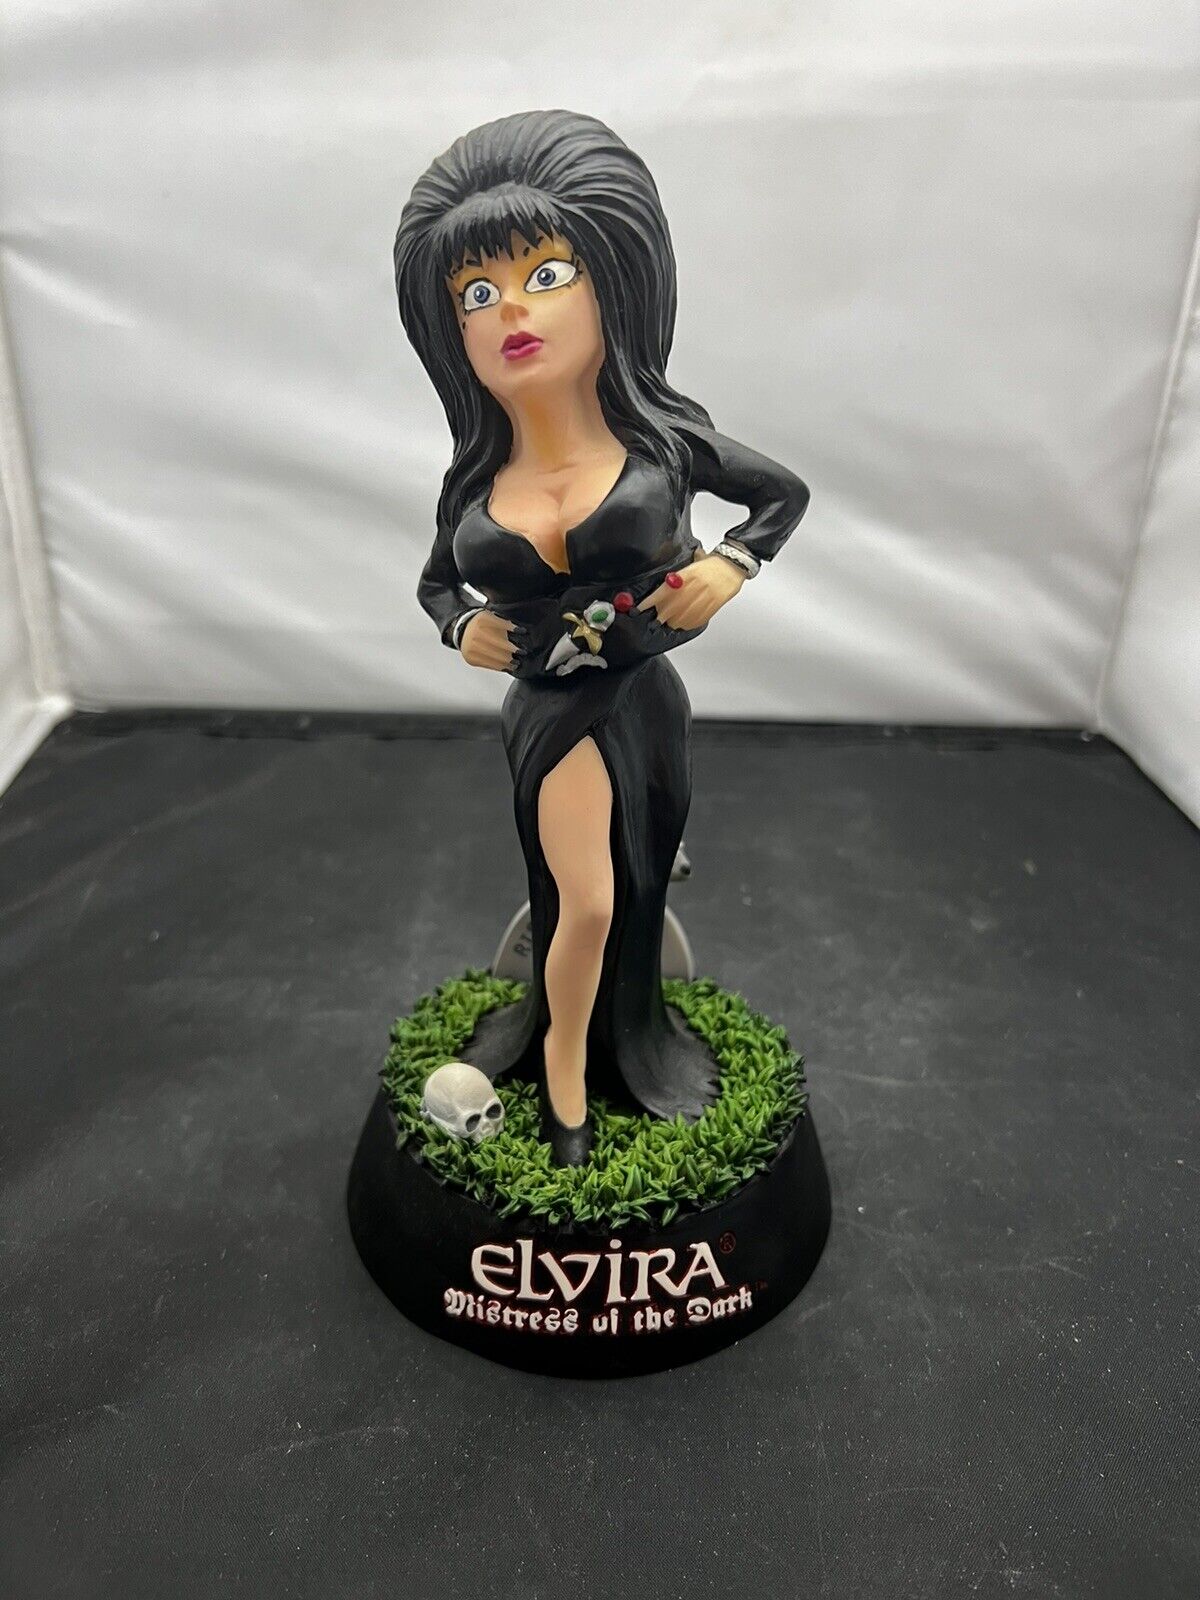 Rare 2003 ELVIRA Mistress of The Dark Bobble Figurine Nodder Queen B Strikezone